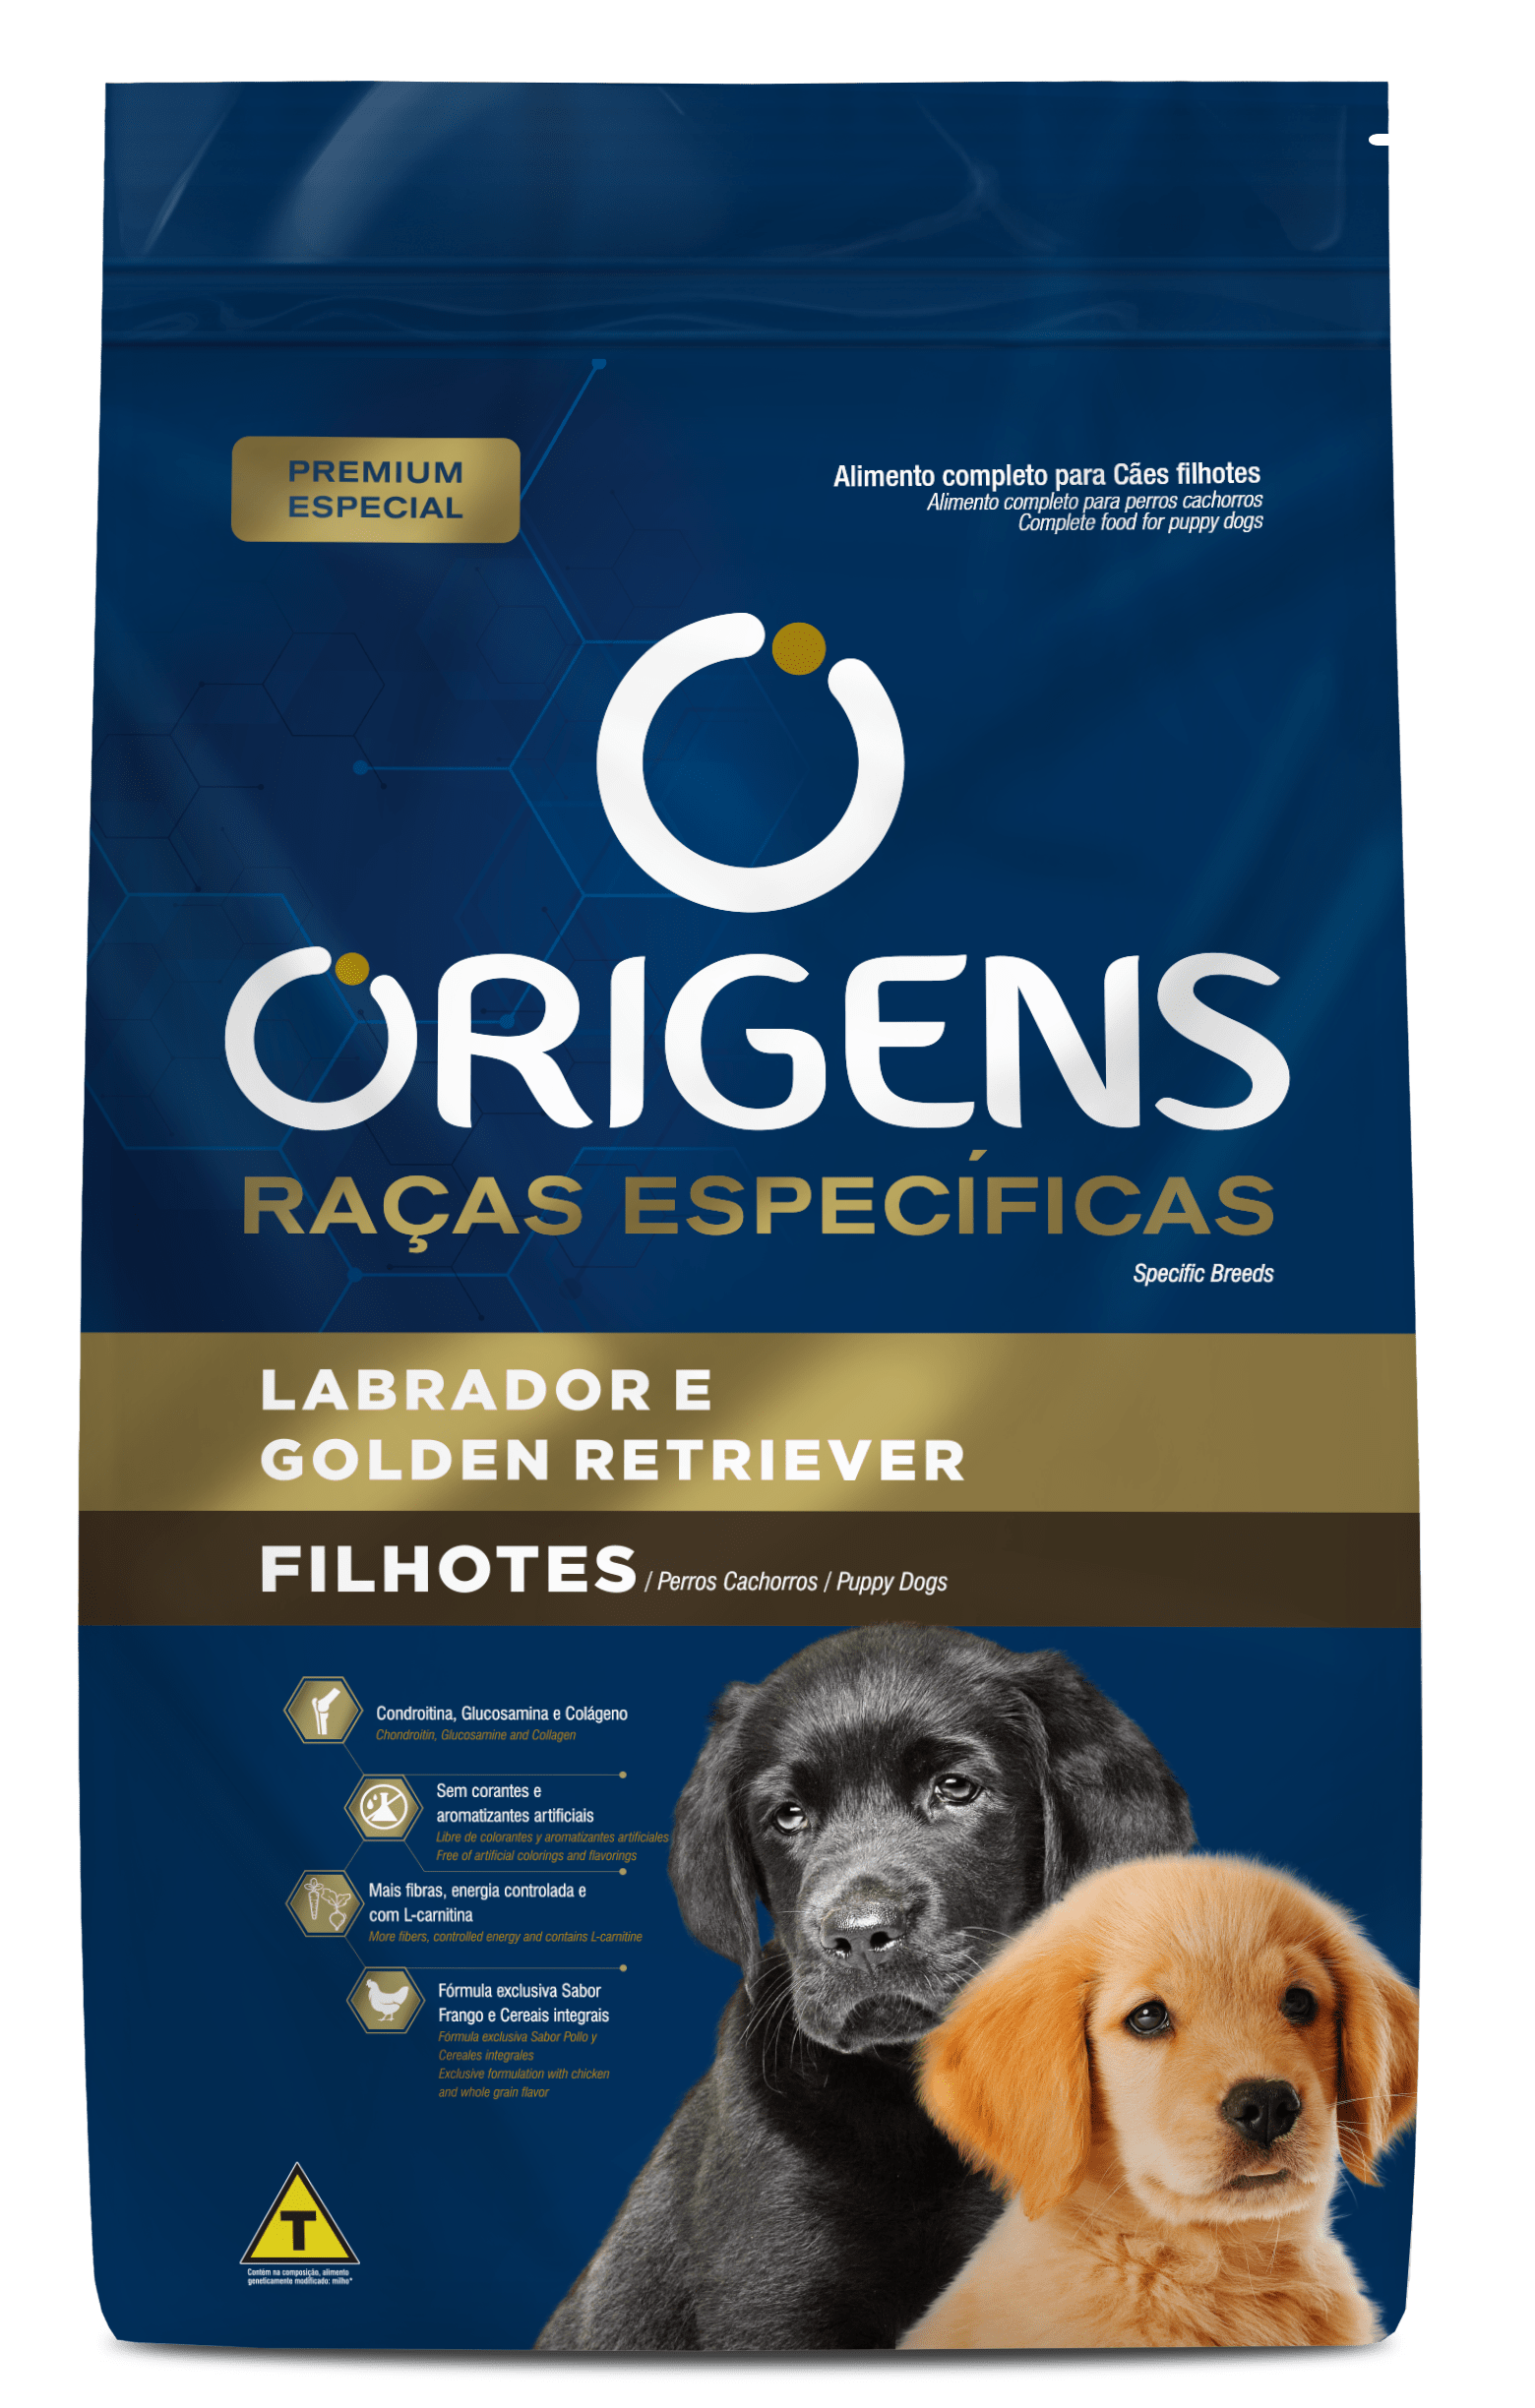 Origens Premium Especial Specific Breeds Puppies Labrador e Golden Retriever